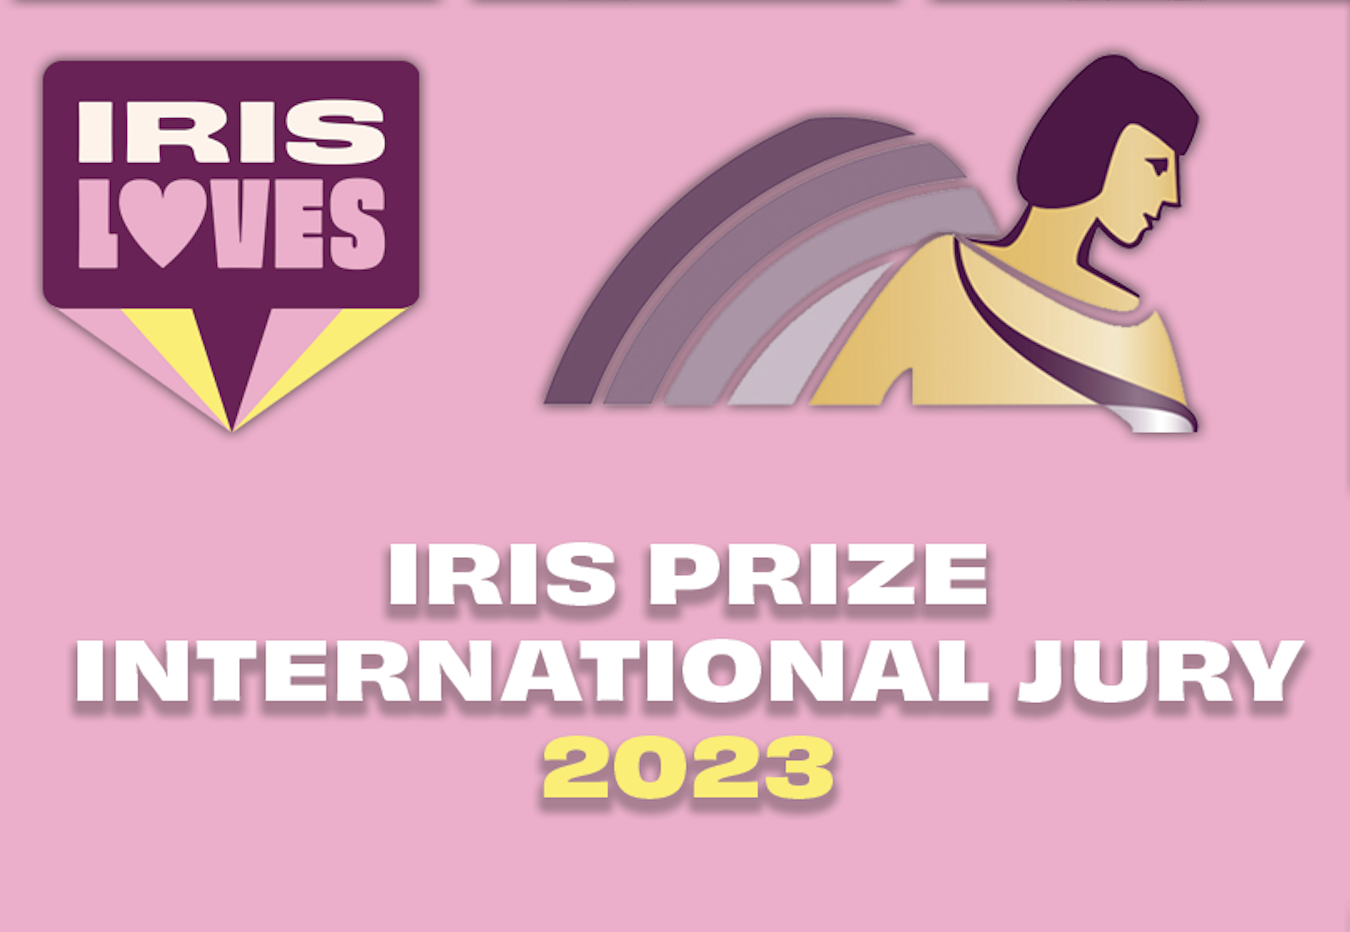 International Iris Prize Jury - 2023